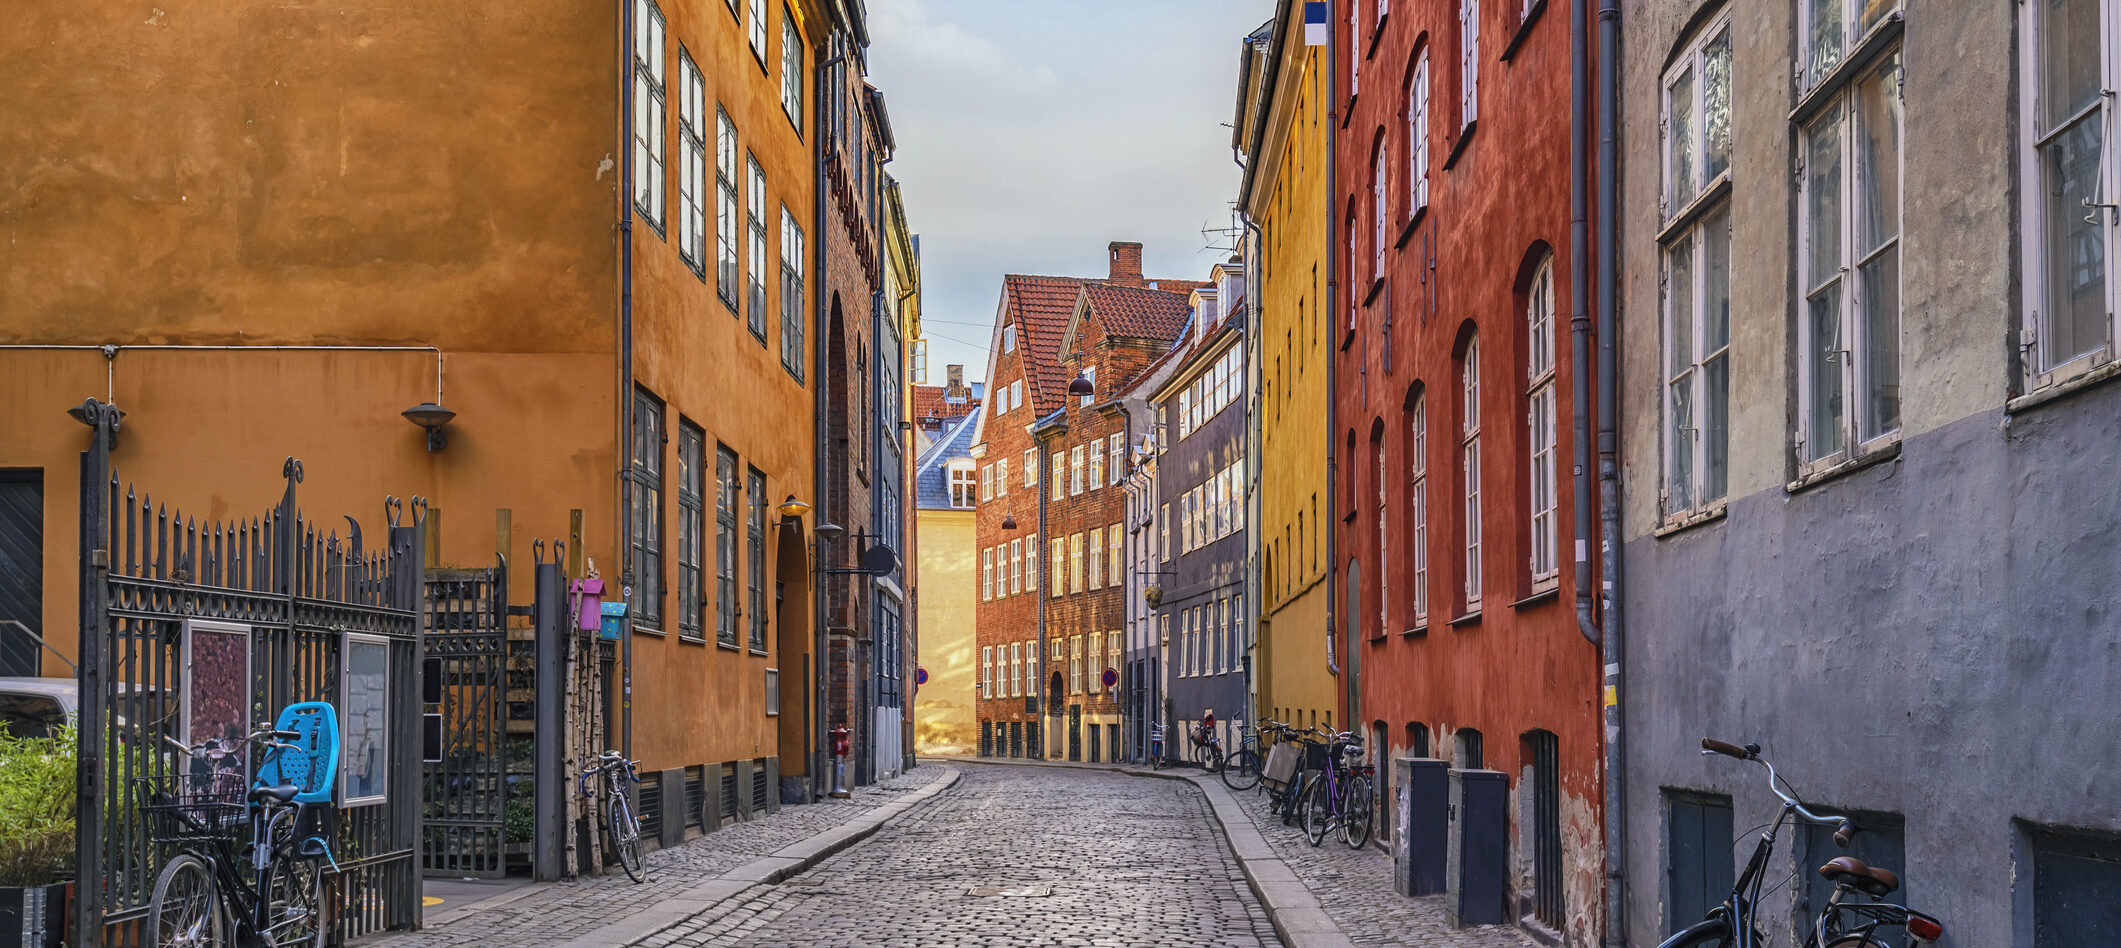 investeringsejendomme, foreninger, forening i indre by i københavn